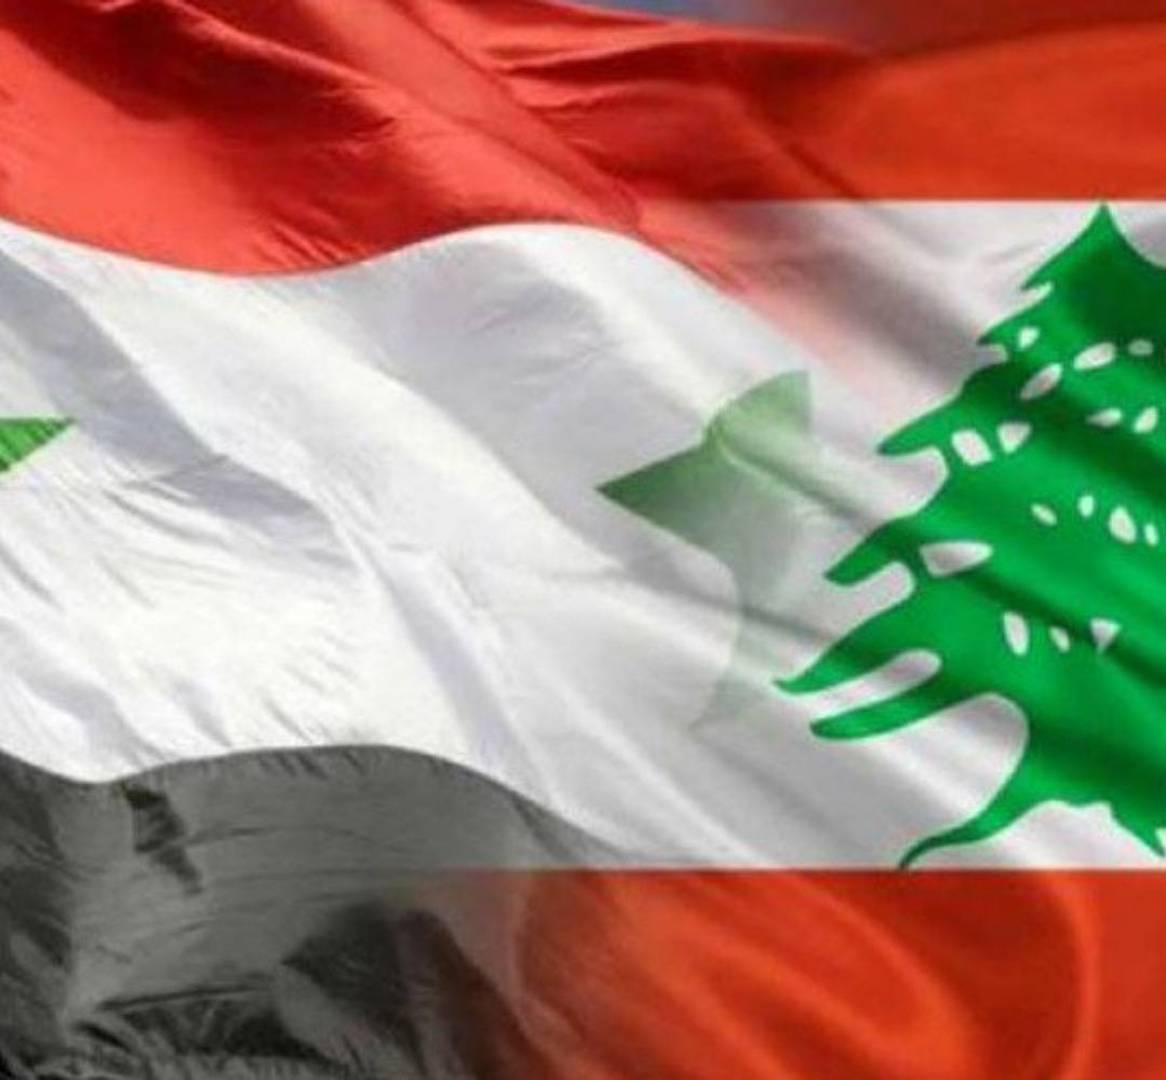 وزير الكهرباء السوري إلى بيروت لتوقيع اتفاقية تزويد لبنان بالكهرباء